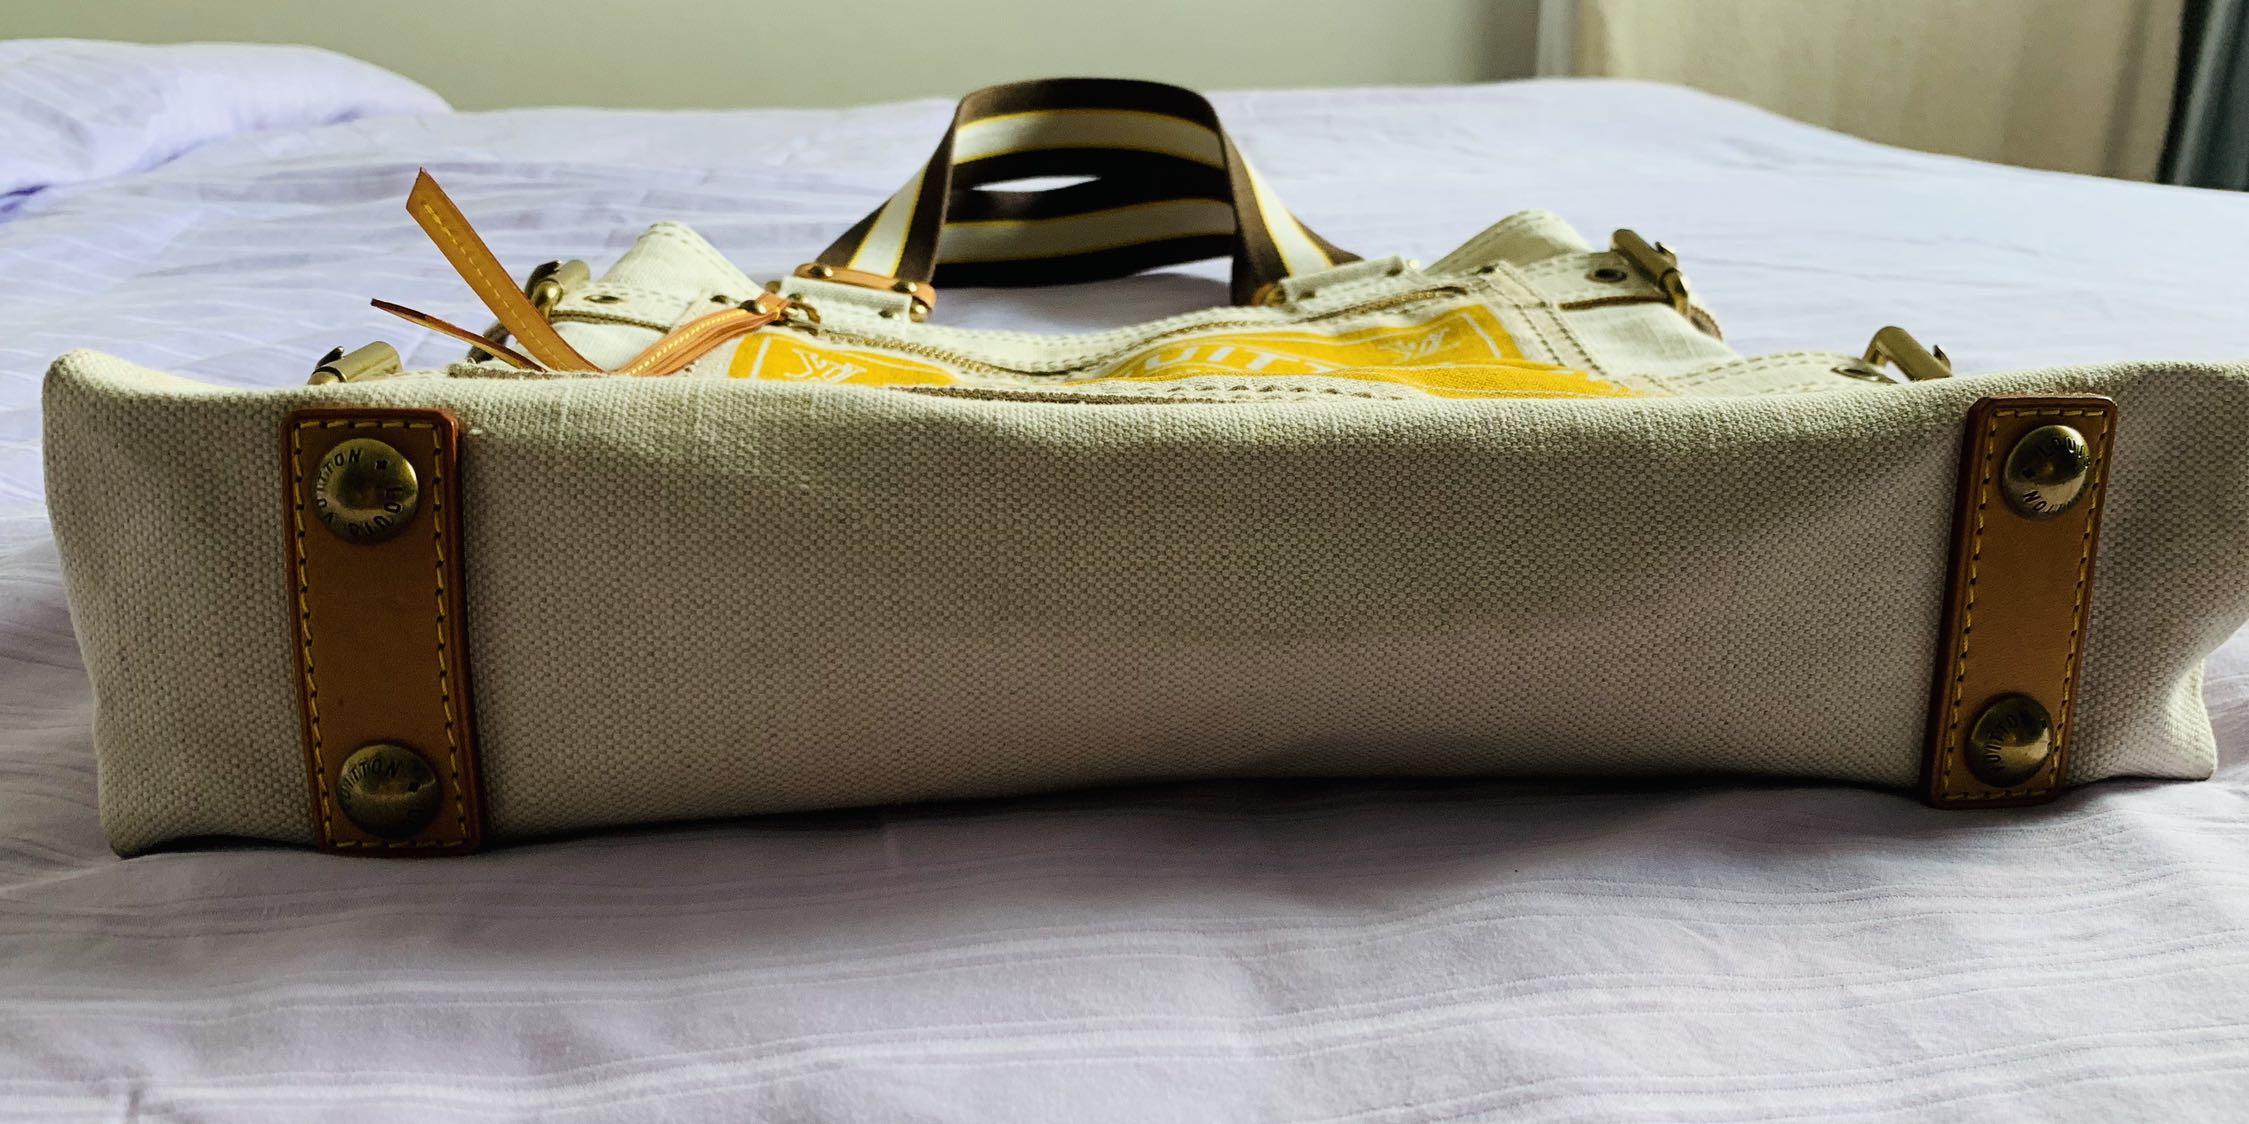 Globe Shopper Cabas GM 'Trunks & Bags' Tote Bag – Poshbag Boutique